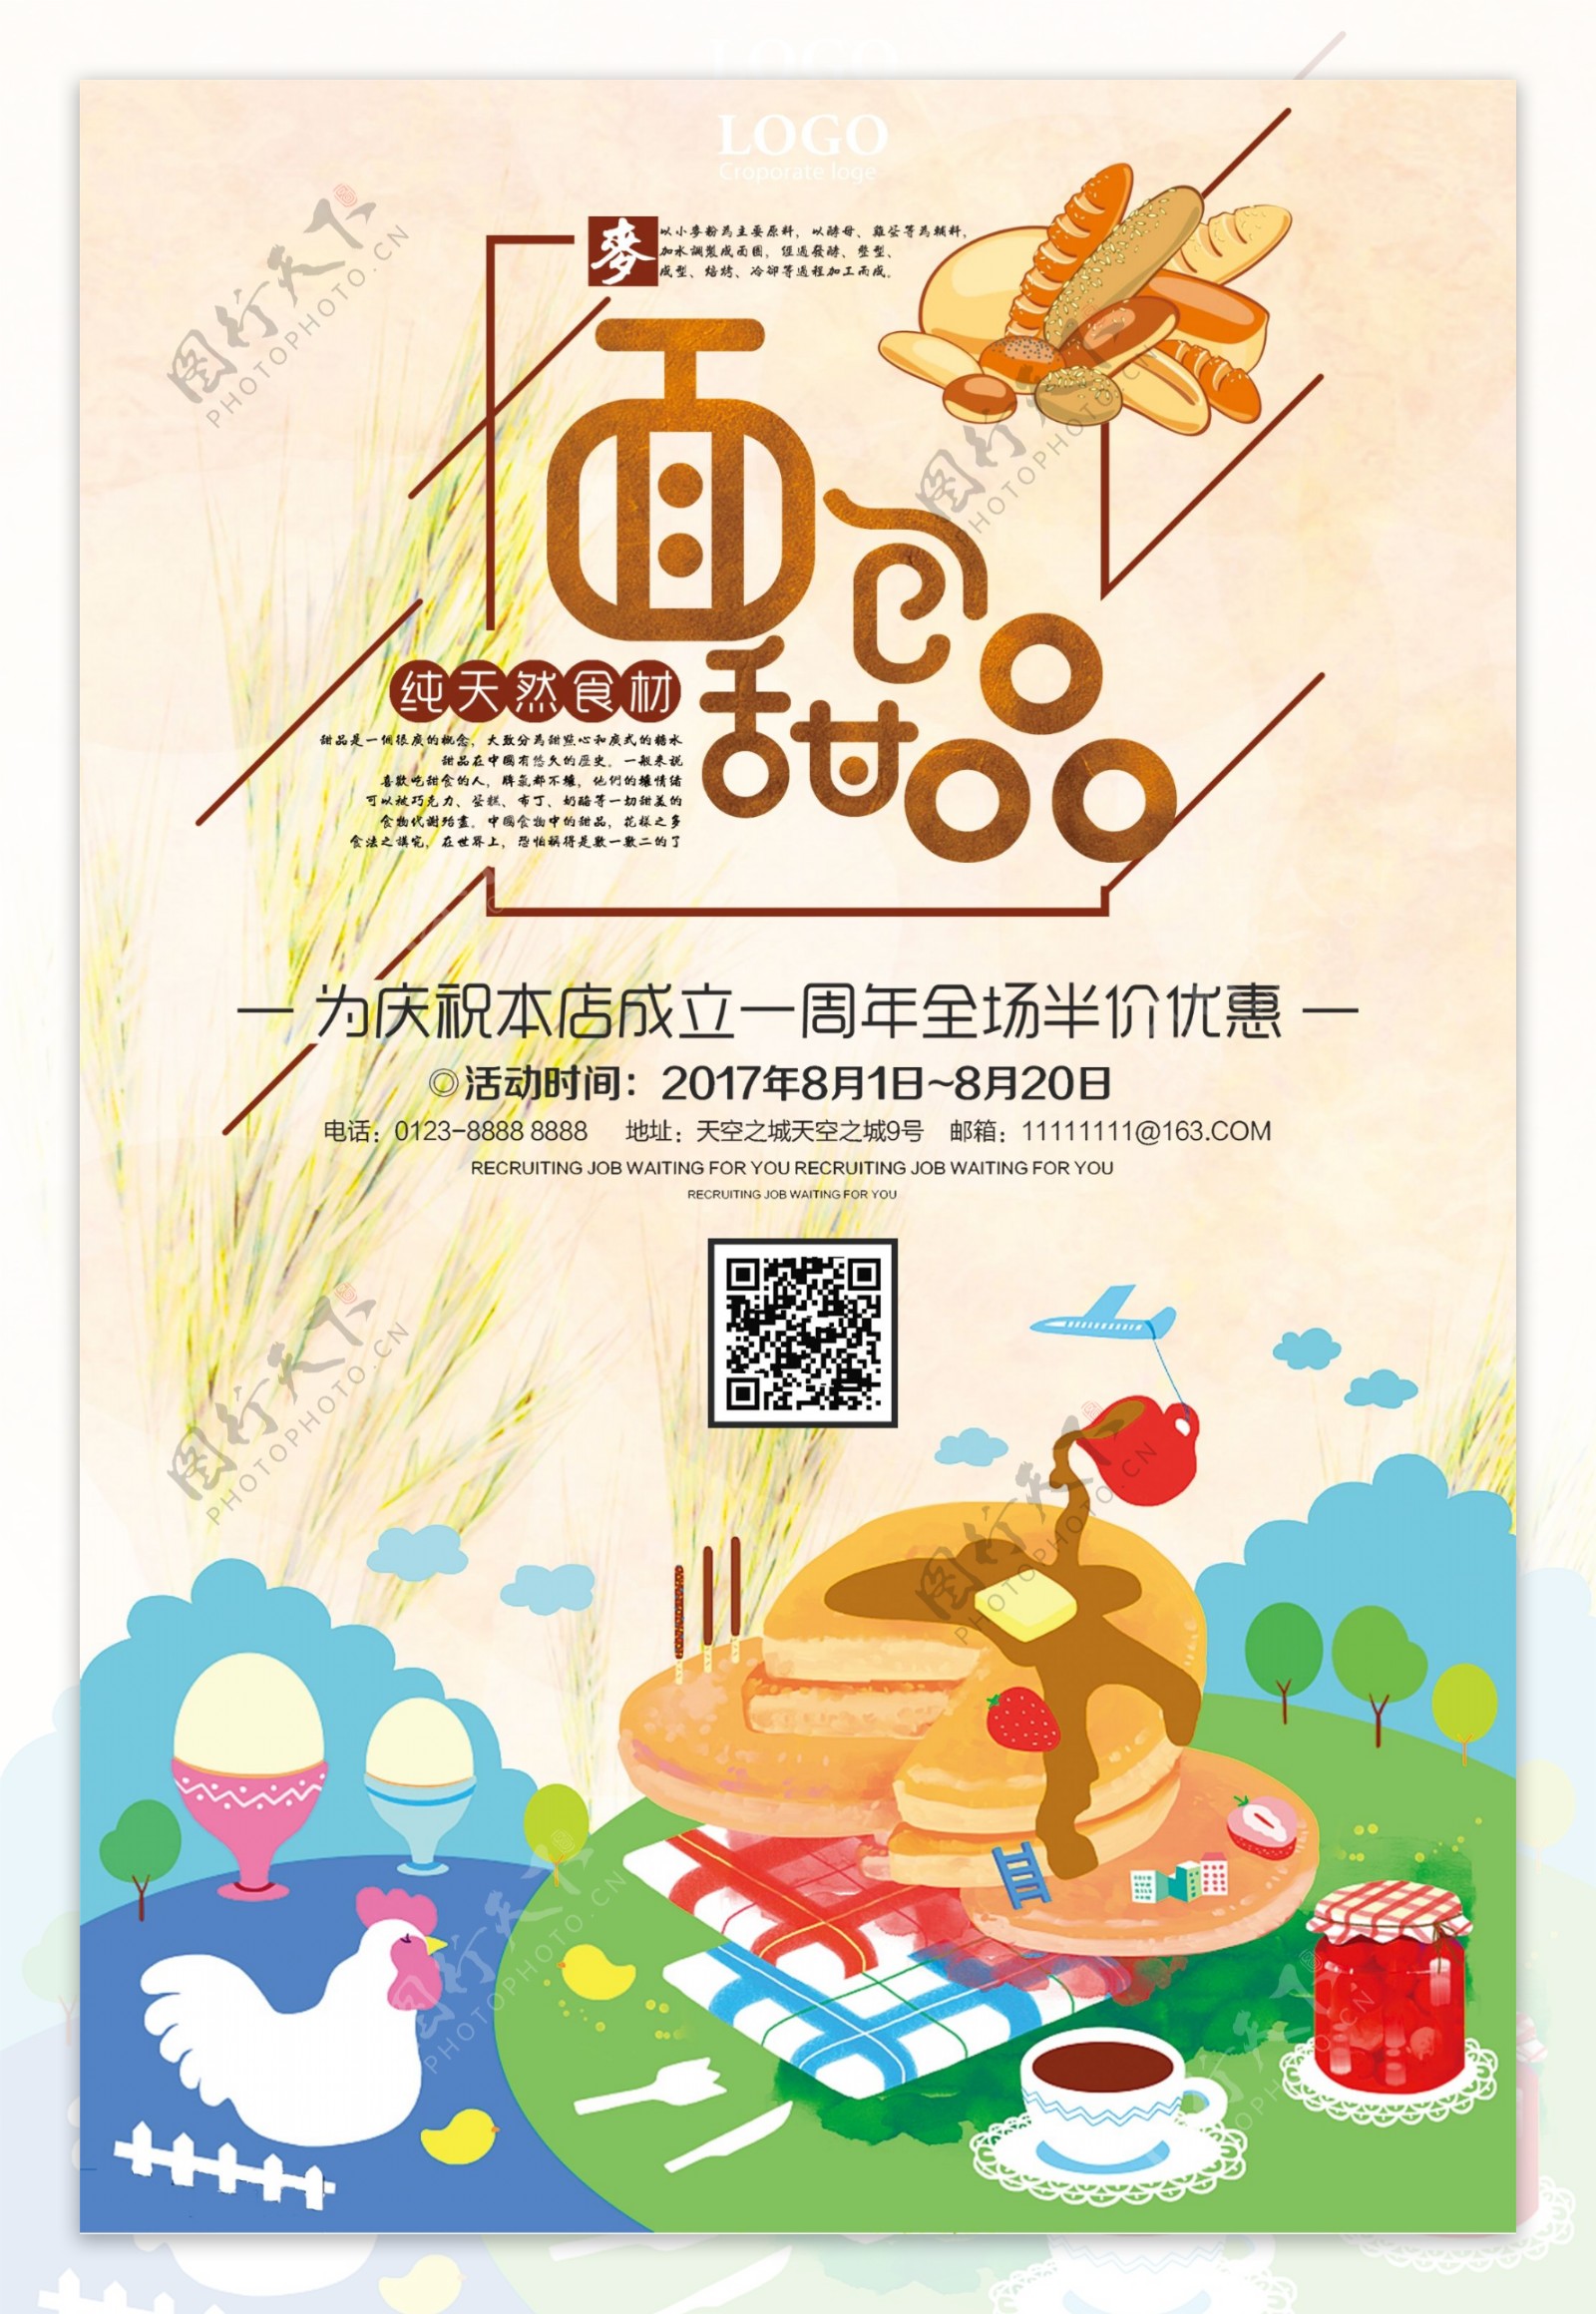 面包甜品店庆优惠促销海报设计